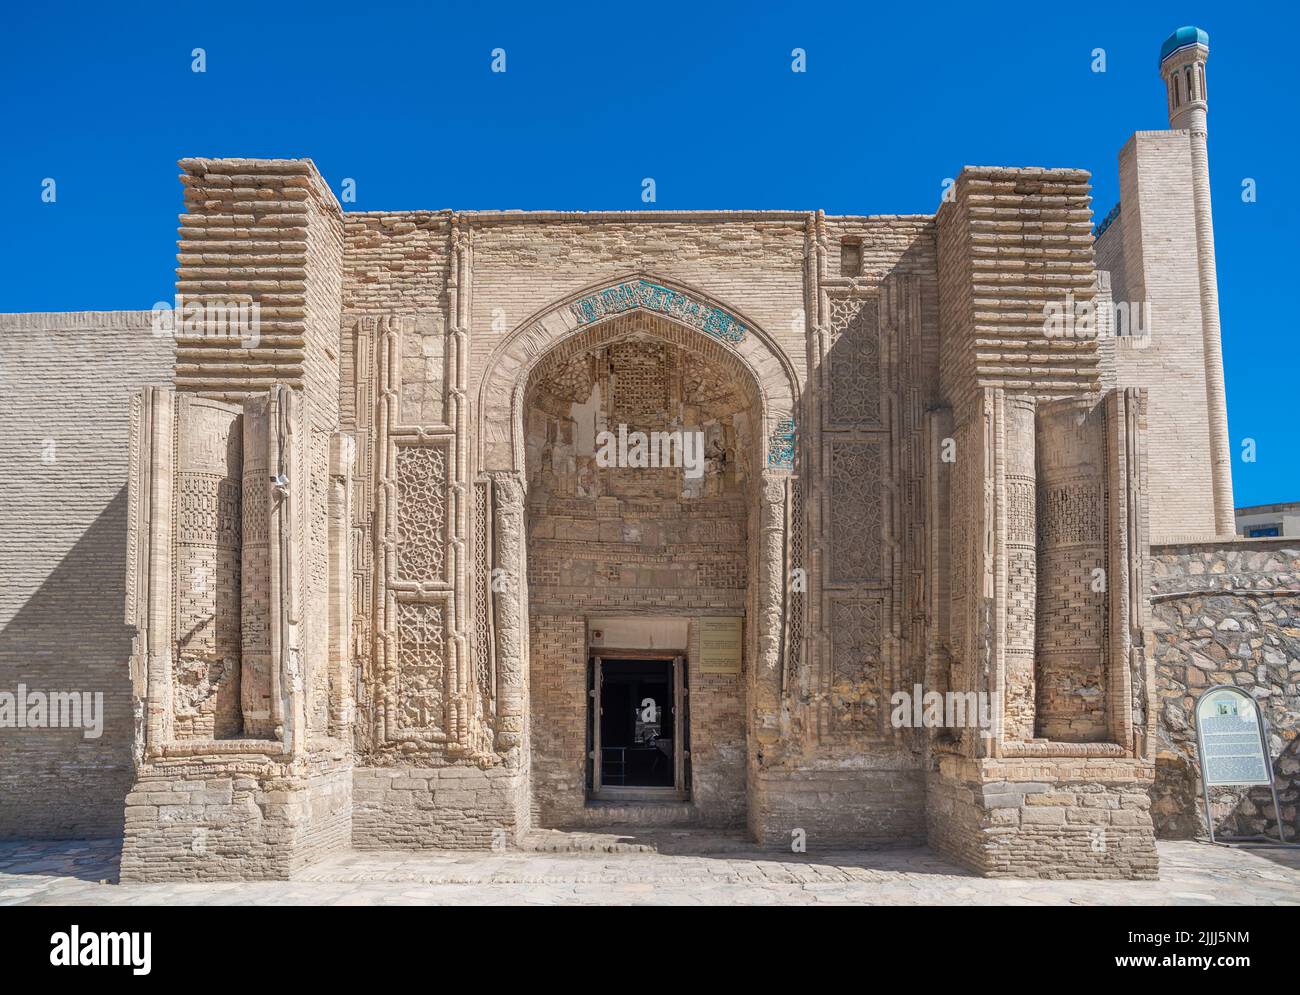 Mezquita Magok-i-Attari, Bujara, Uzbekistán. Una de las más antiguas de Asia Central. Foto de stock